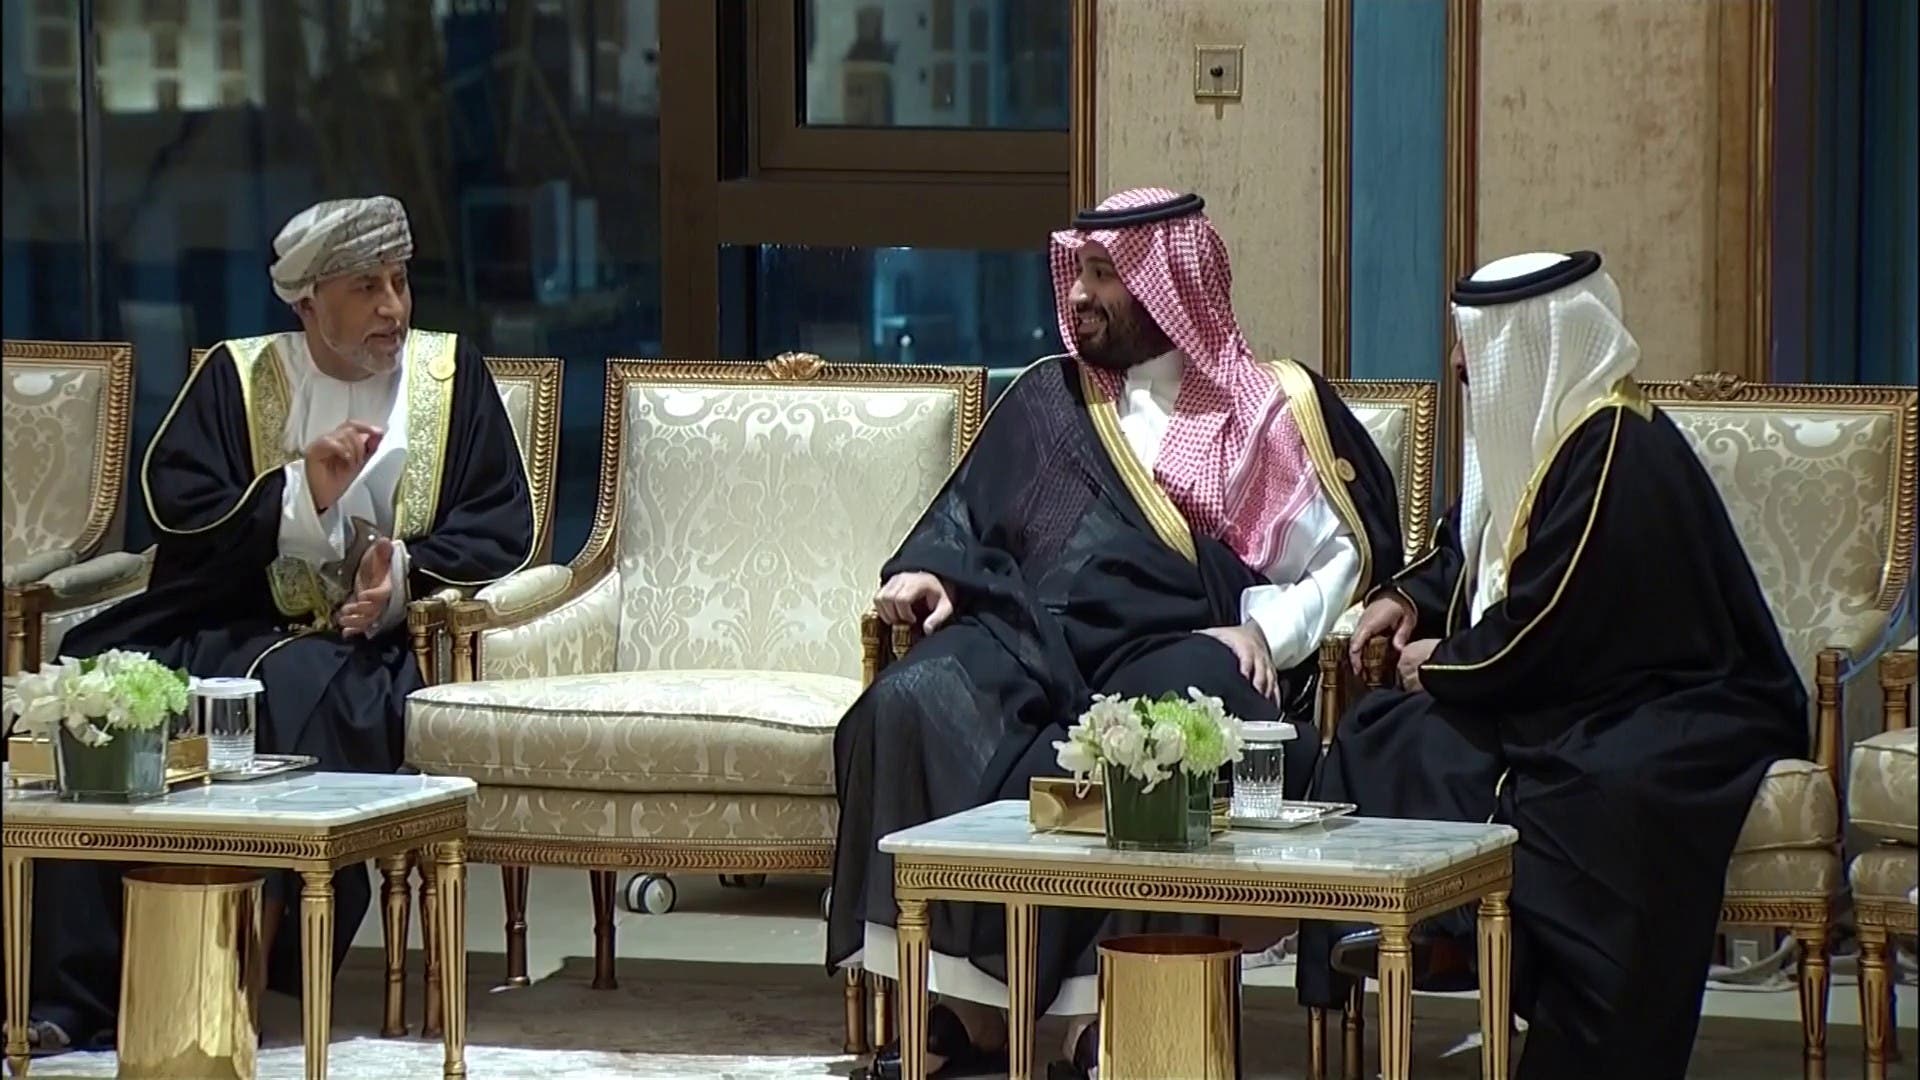 وردنا الان..الملك سلمان يستقبل قادة الخليج في قصر الصفا وهذا ما يحدث الان في مكة المكرمة واليمن تحتل الصدارة "صور"